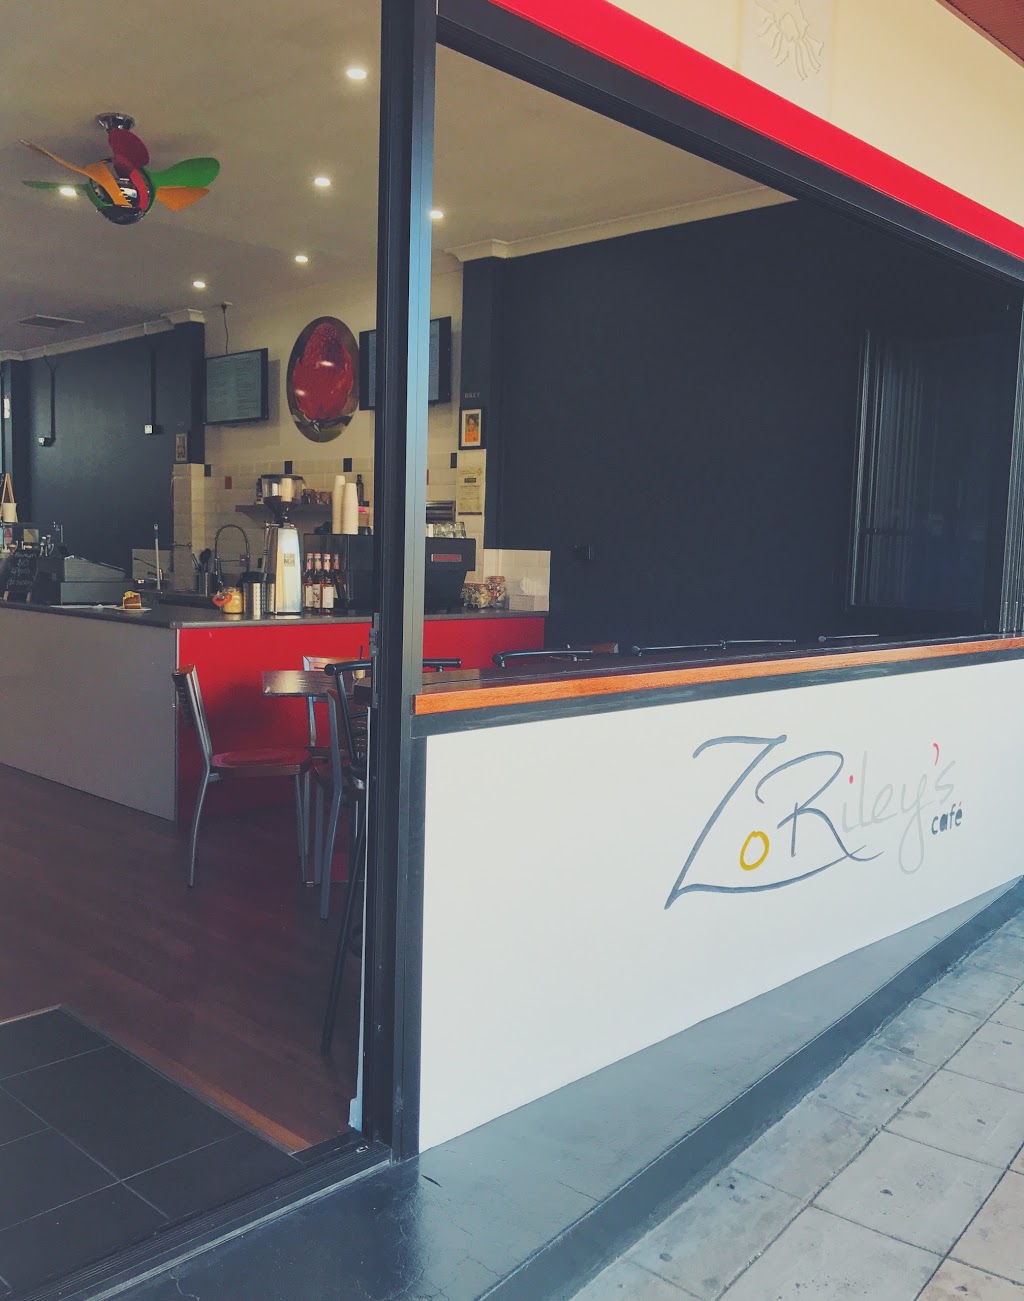 ZoRileys Cafe | cafe | 43 Station St, Waratah NSW 2298, Australia